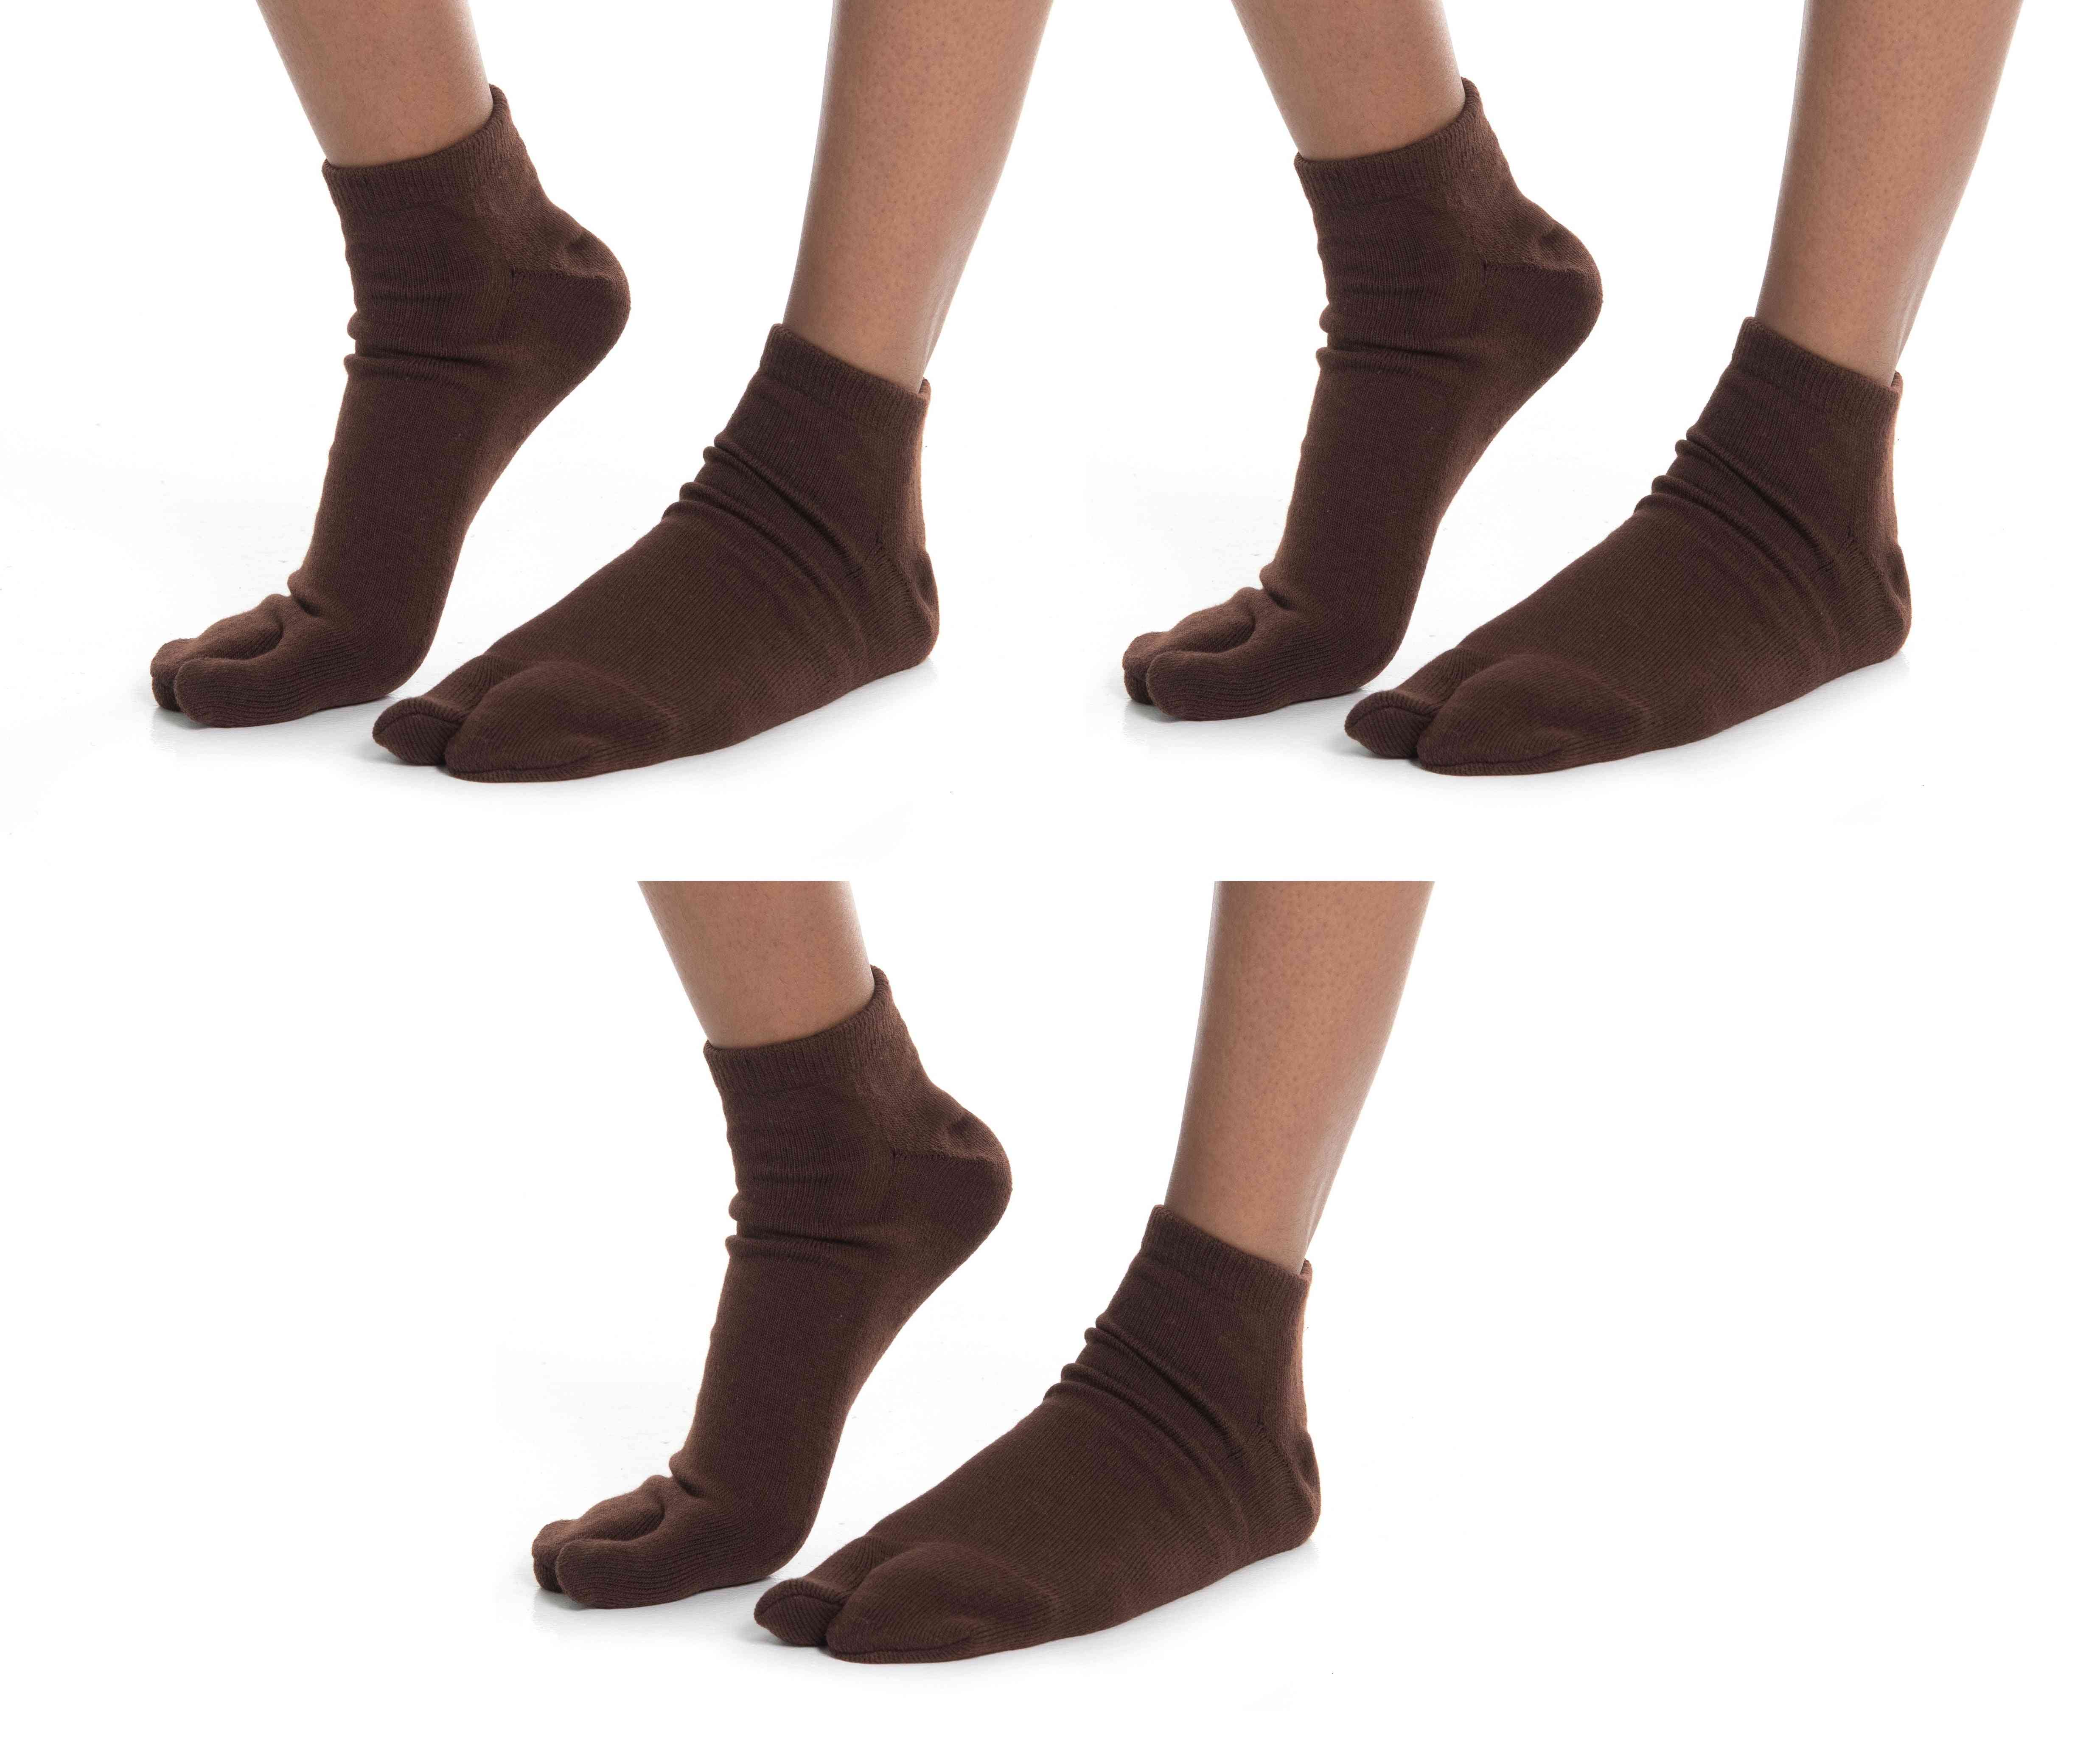 Flip-flop Ankle Socks